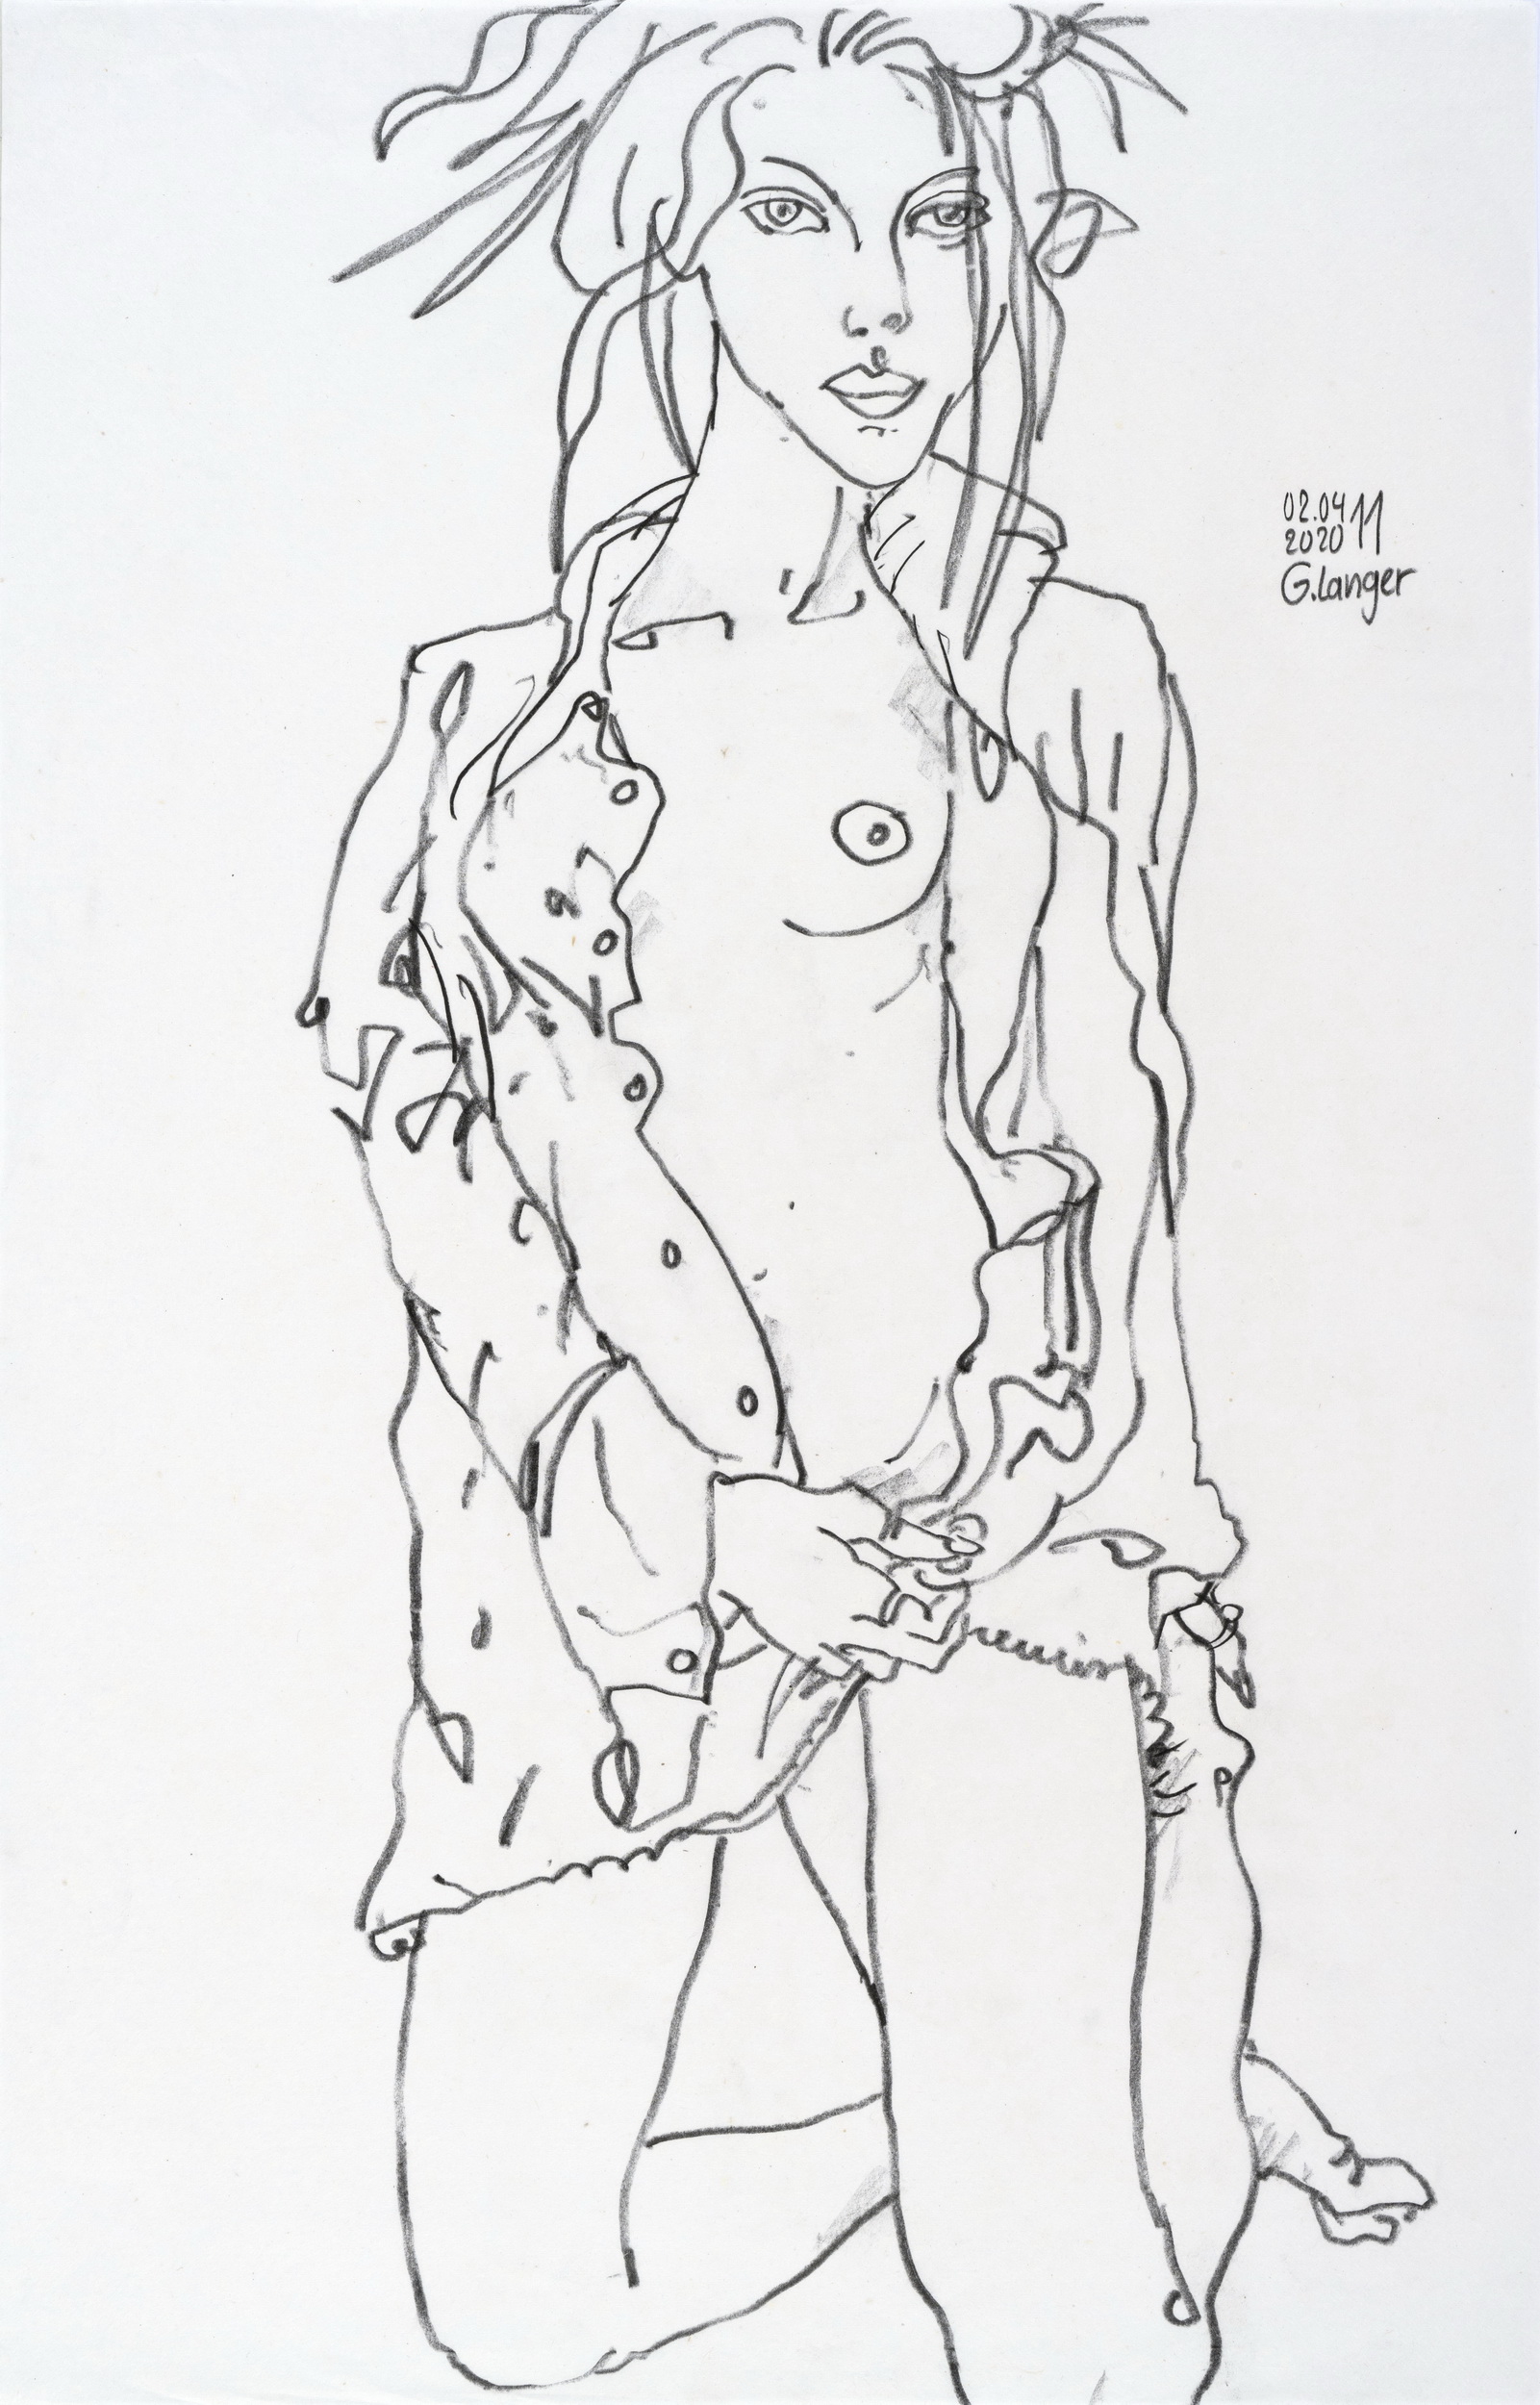 Gunter Langer, Kniendes halb angezogenes Mädchen, 2020, Chinapapier, 70 x 51 cm